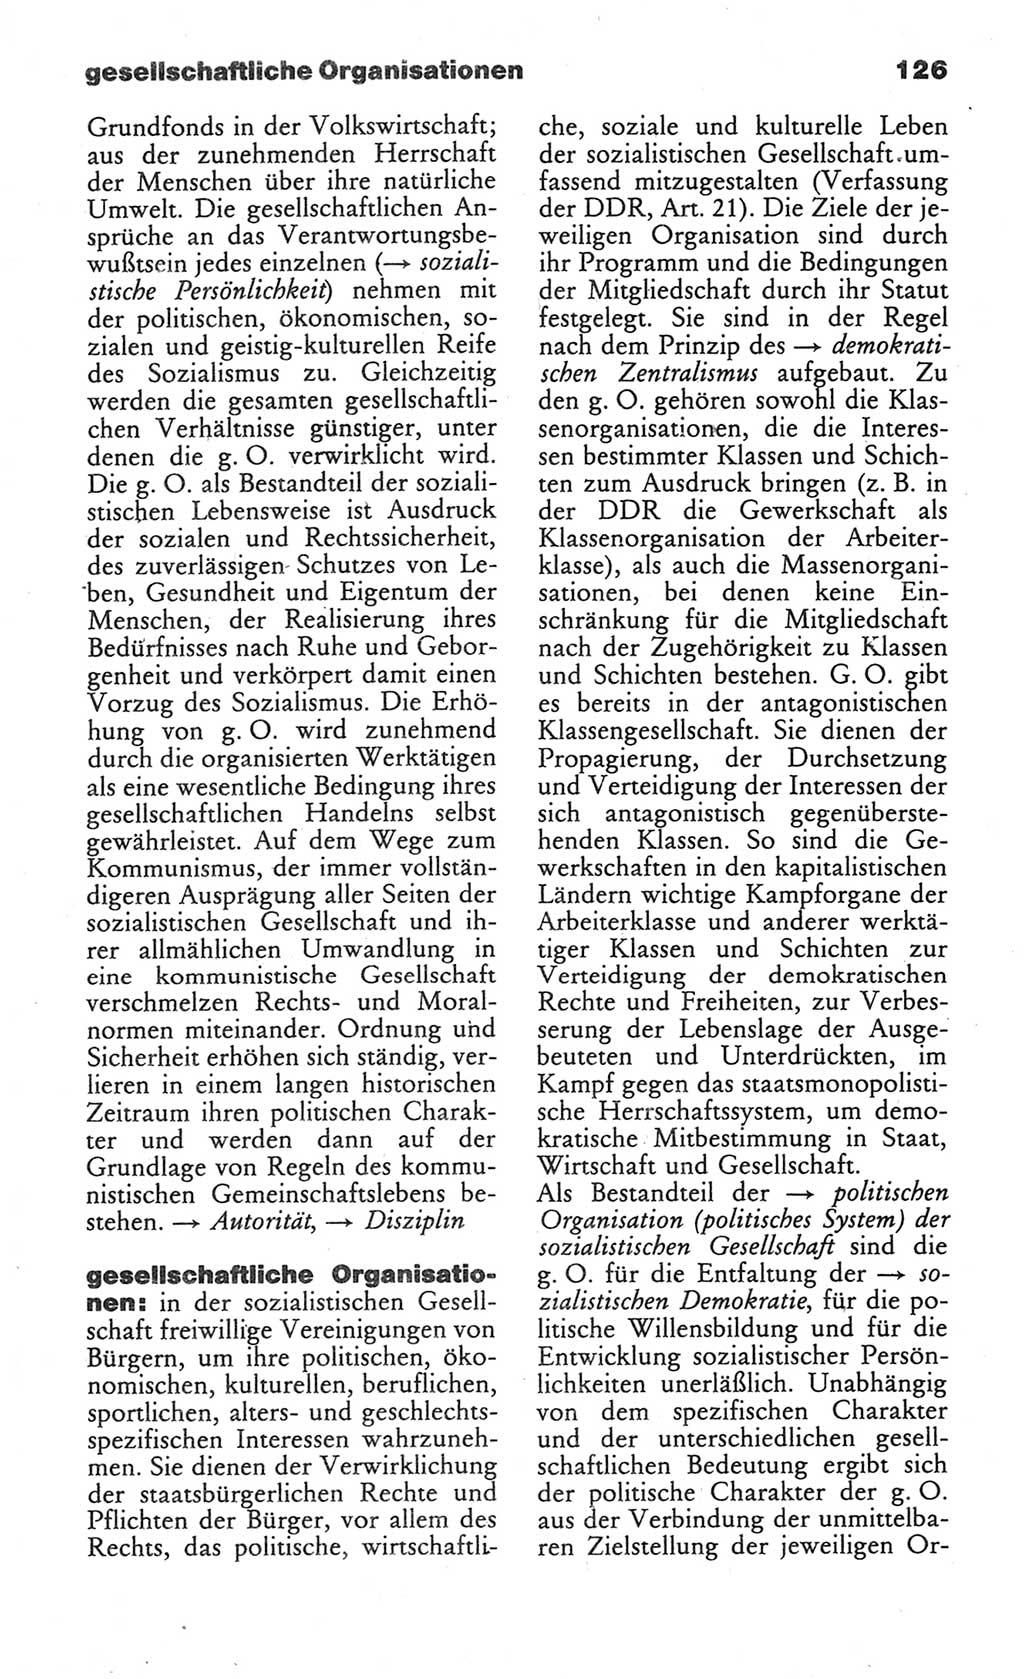 Wörterbuch des wissenschaftlichen Kommunismus [Deutsche Demokratische Republik (DDR)] 1984, Seite 126 (Wb. wiss. Komm. DDR 1984, S. 126)